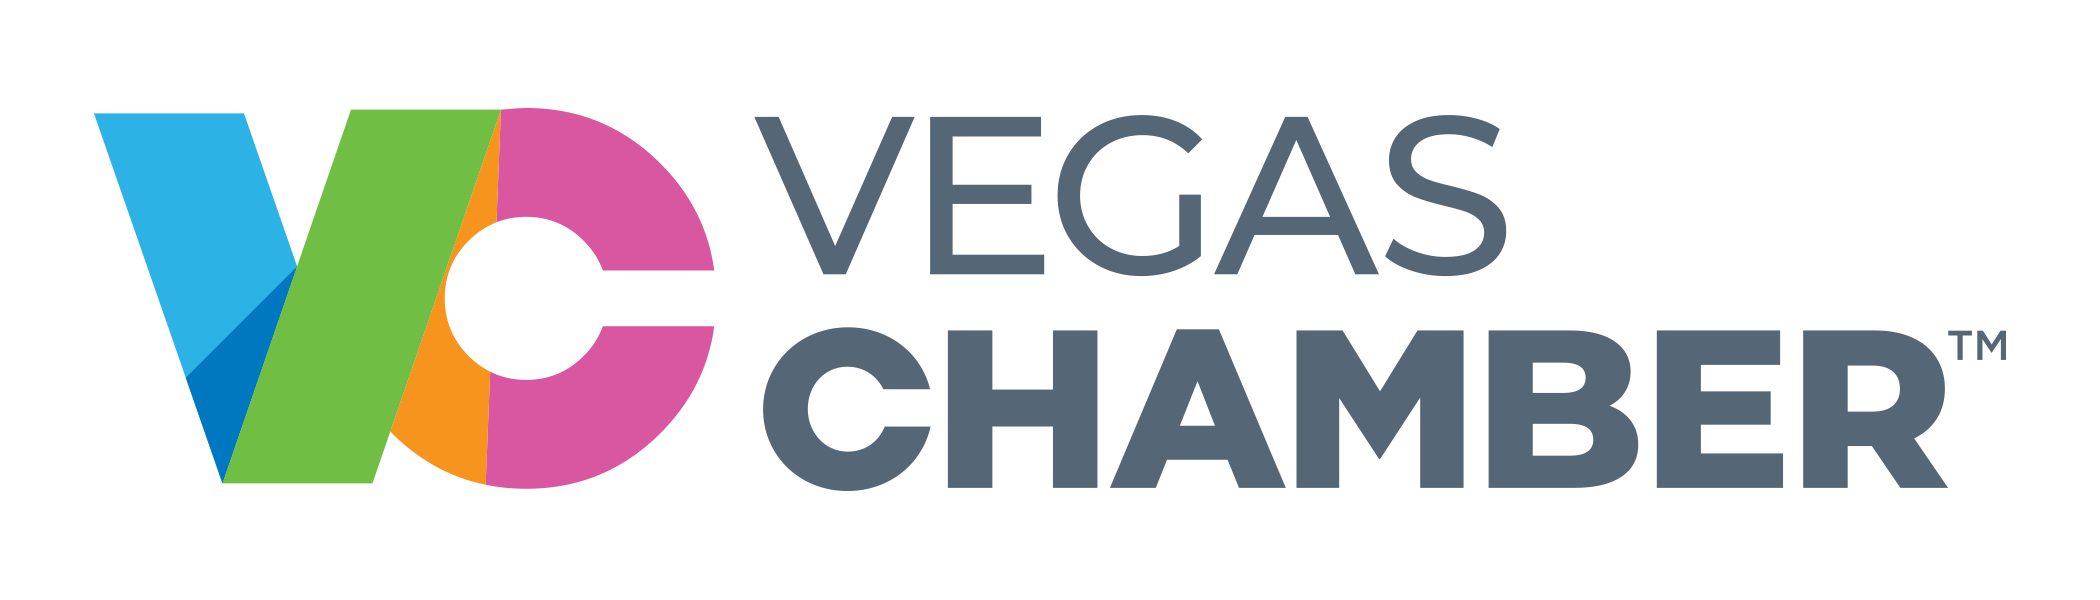 Vegas Chamber of Commerce